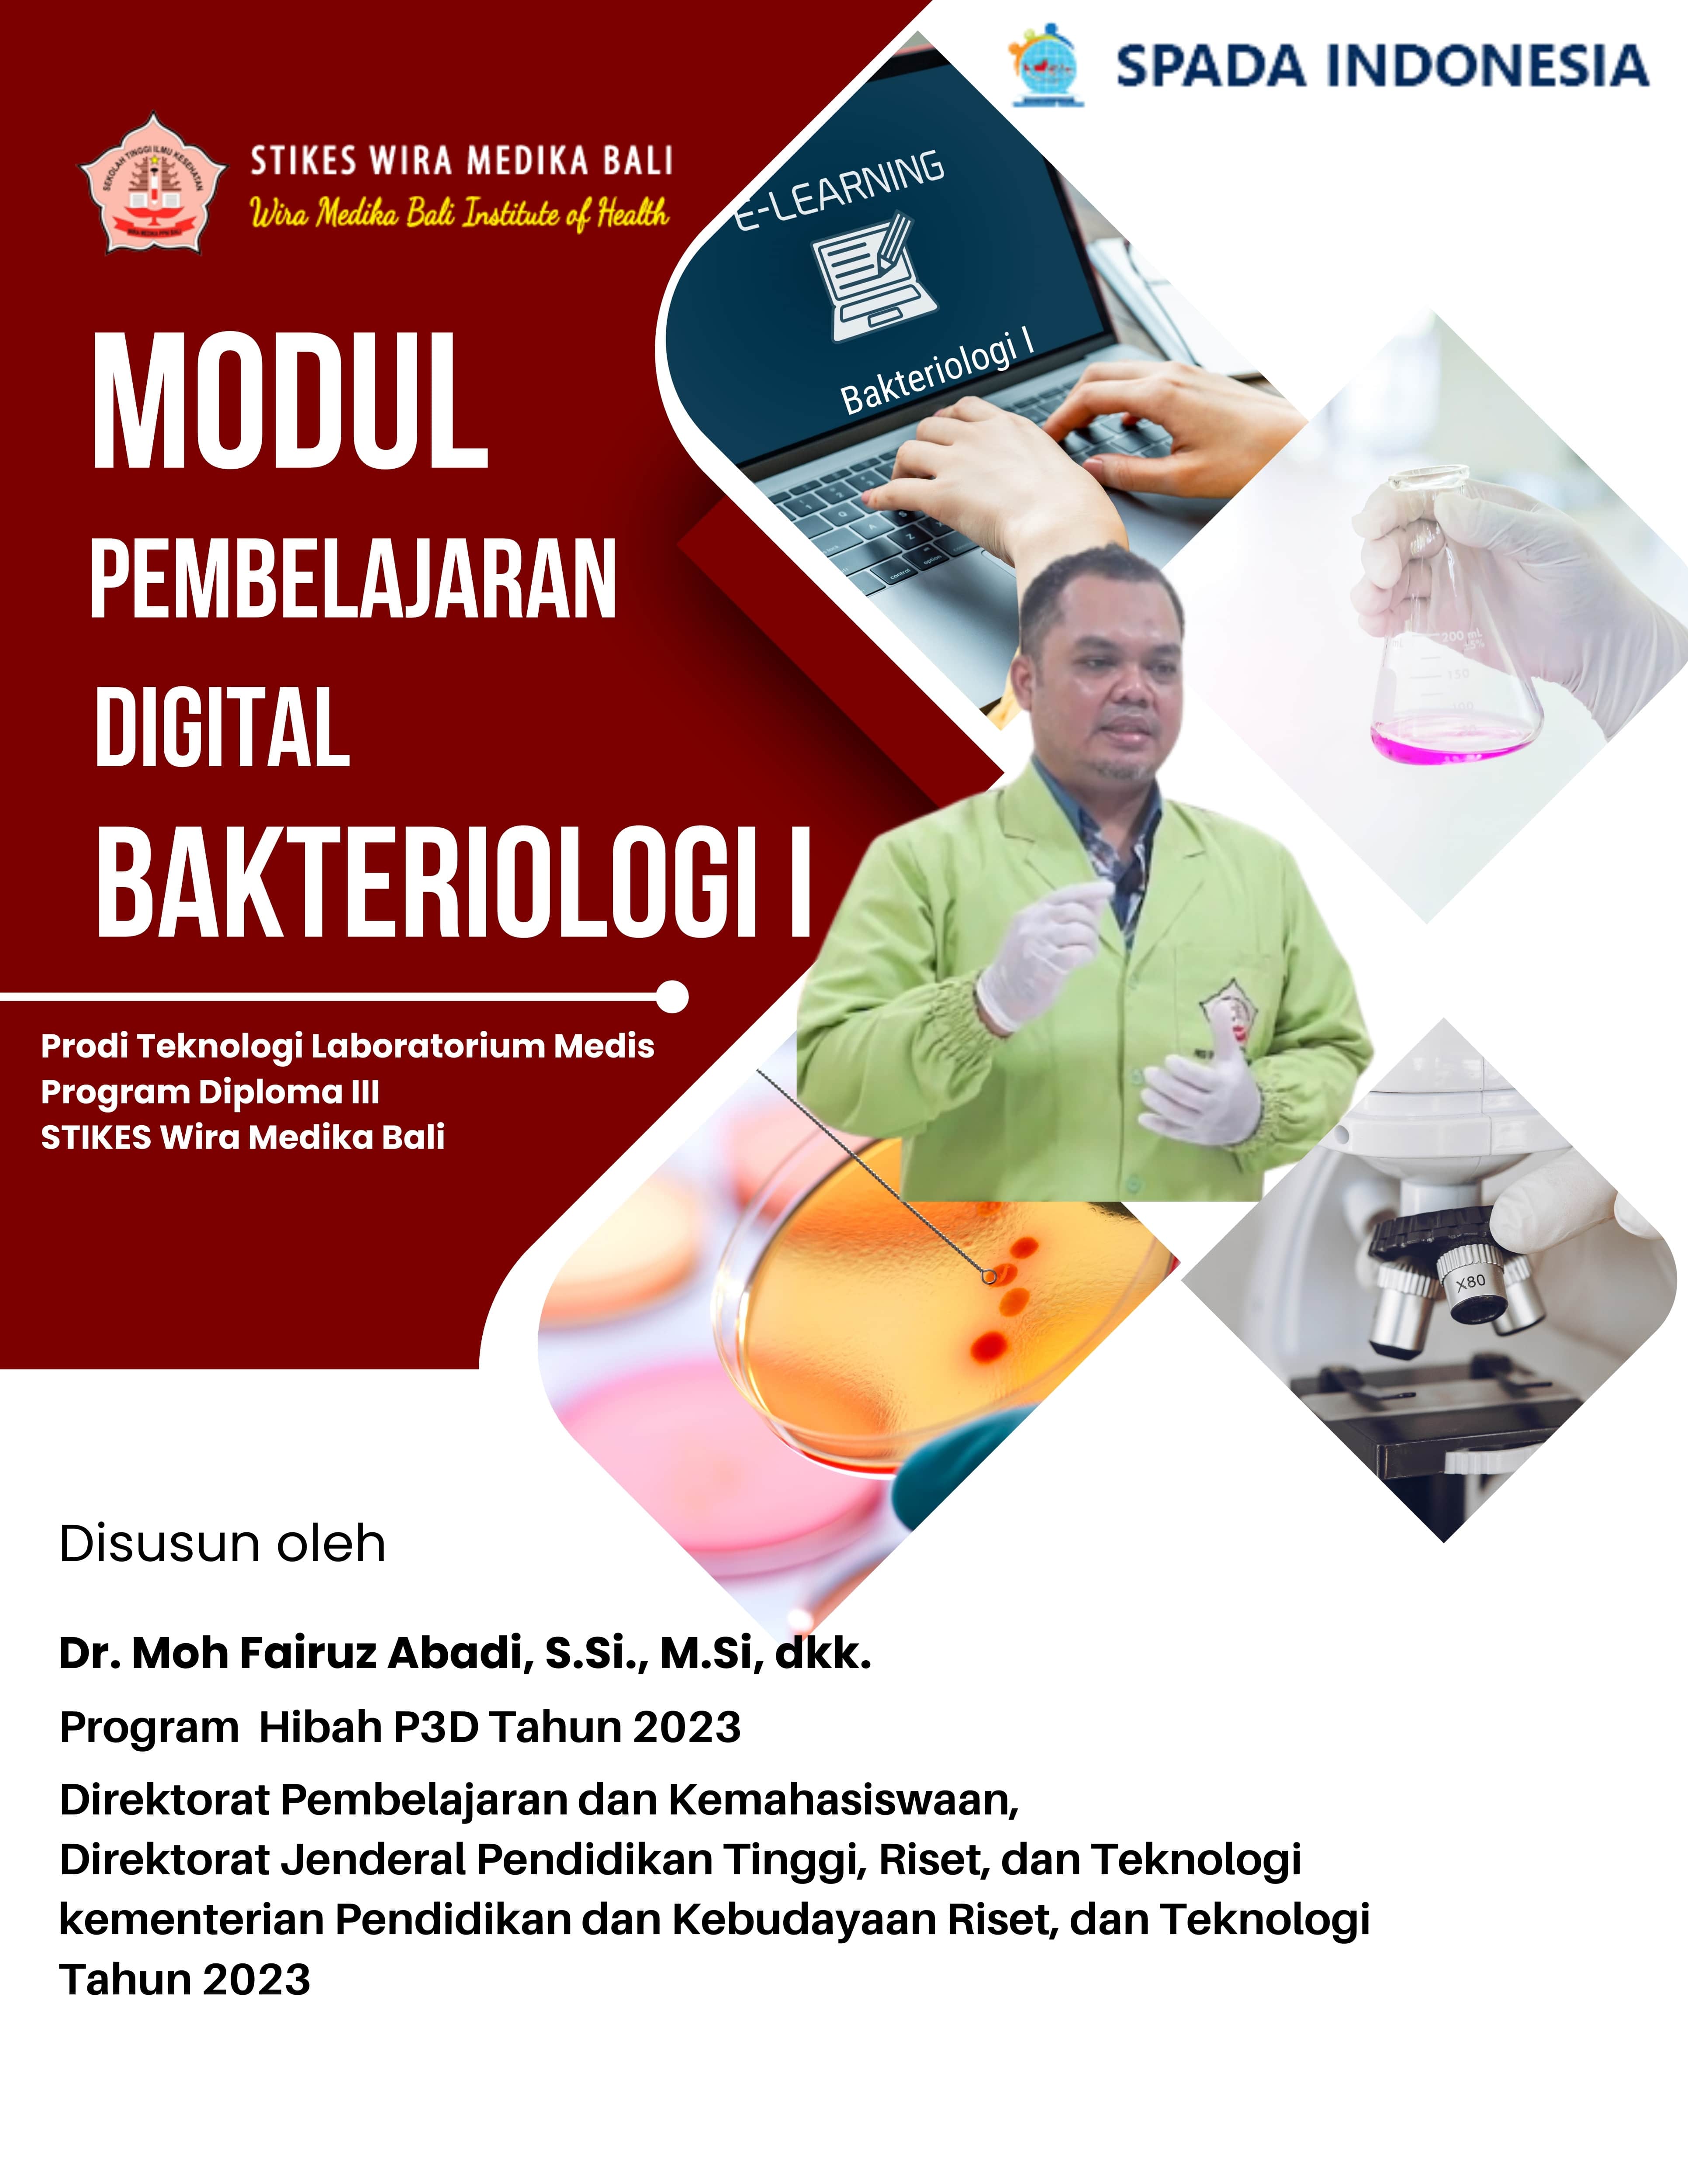 Bakteriologi I